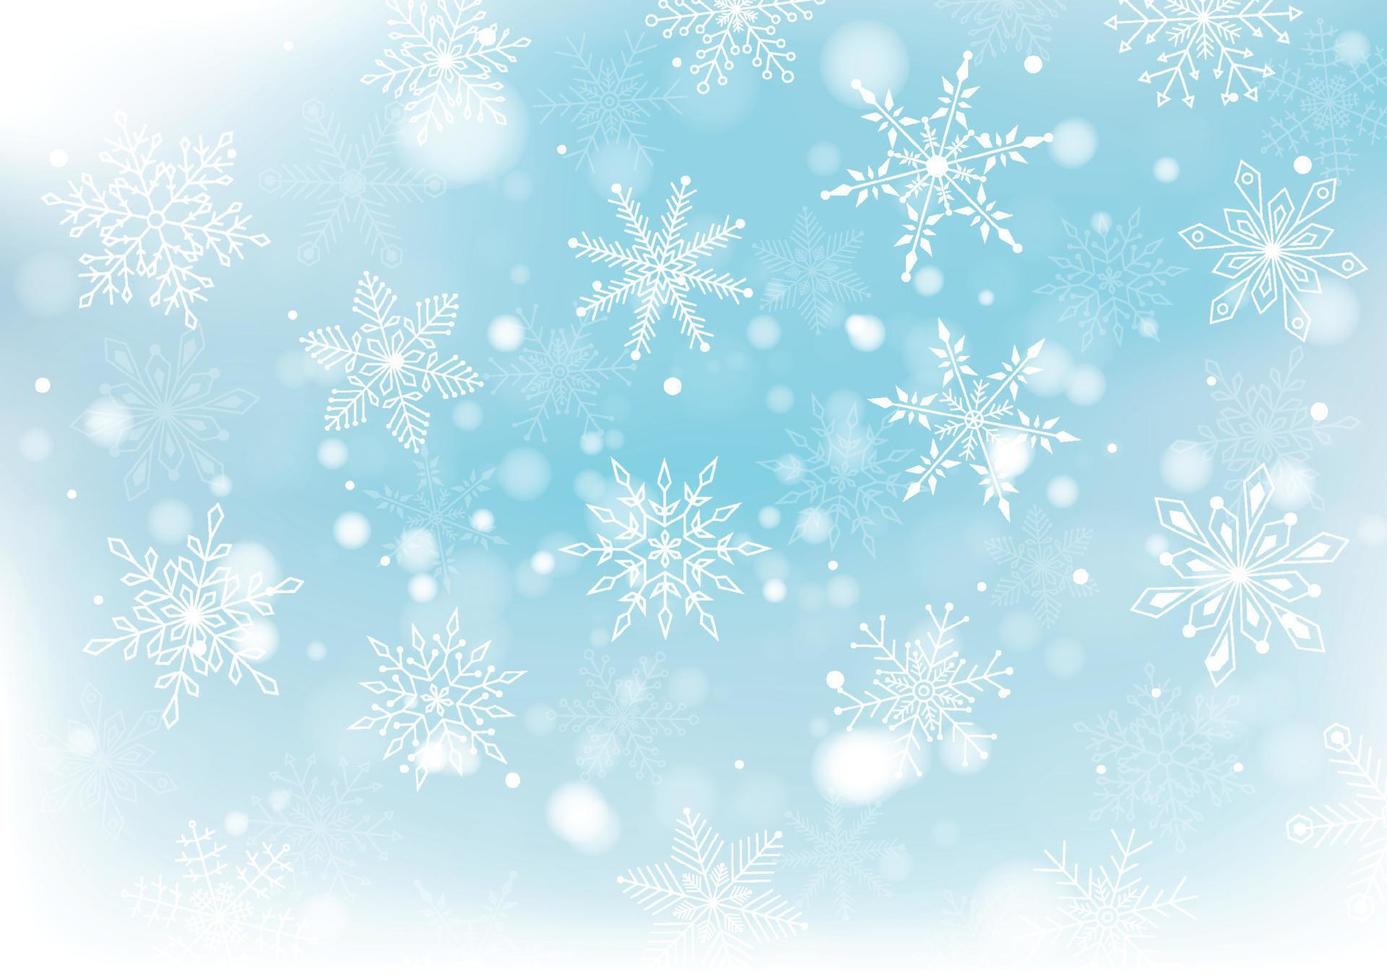 jul och ny år med snöflingor och fläck bokeh av ljus på bakgrund. vektor illustration